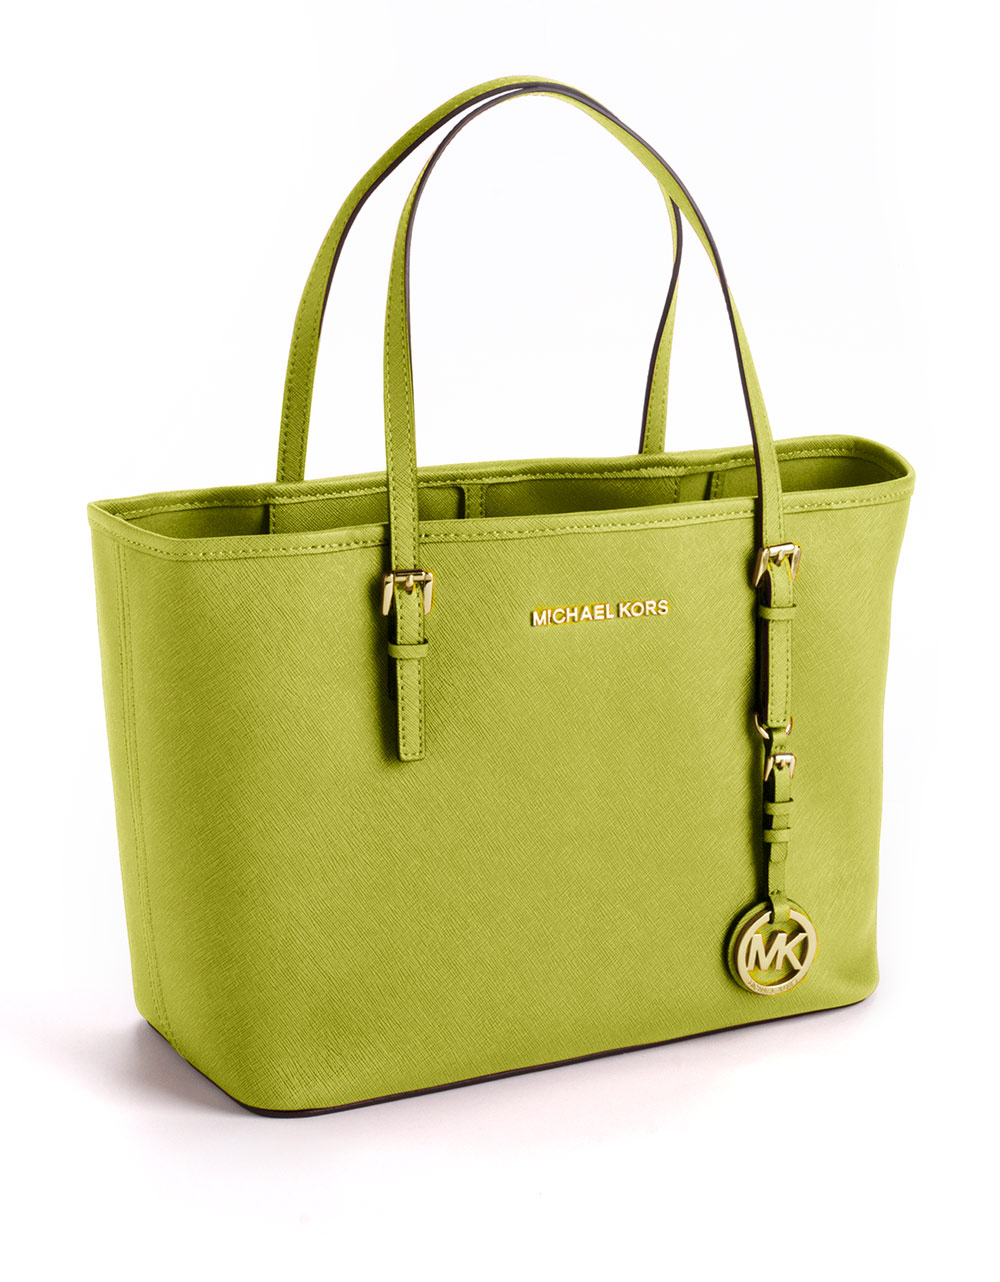 MICHAEL KORS: handbag for woman - Green